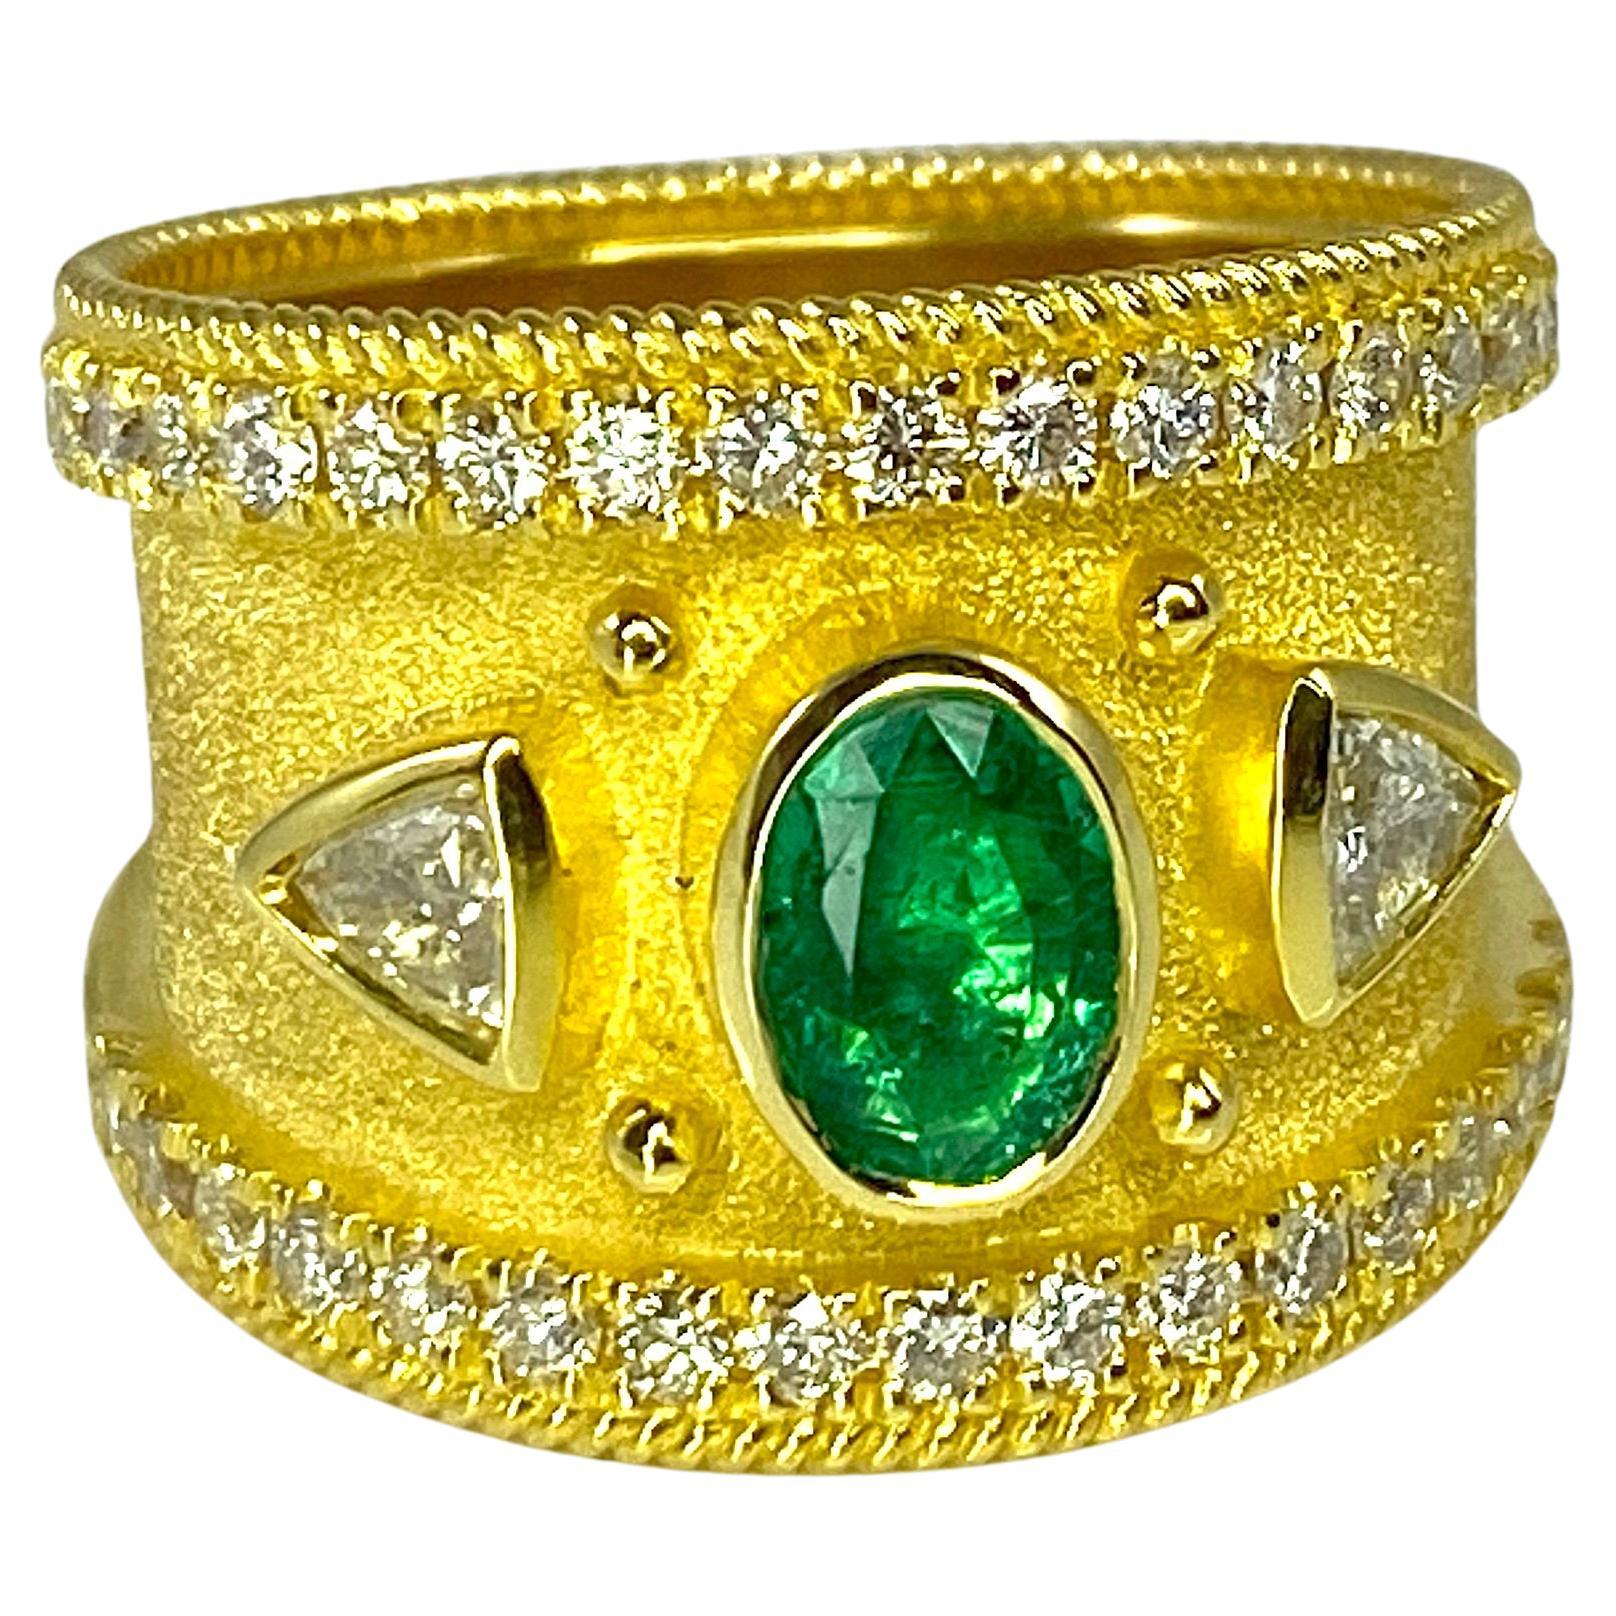 Dies ist eine atemberaubende S.Georgios Designer Ring in Gelbgold 18 Karat alle mit einem byzantinischen Samt Hintergrund und Granulation Details verziert - gedrehte Drähte und Perlen. In der Mitte des Rings befindet sich ein wunderschöner Smaragd